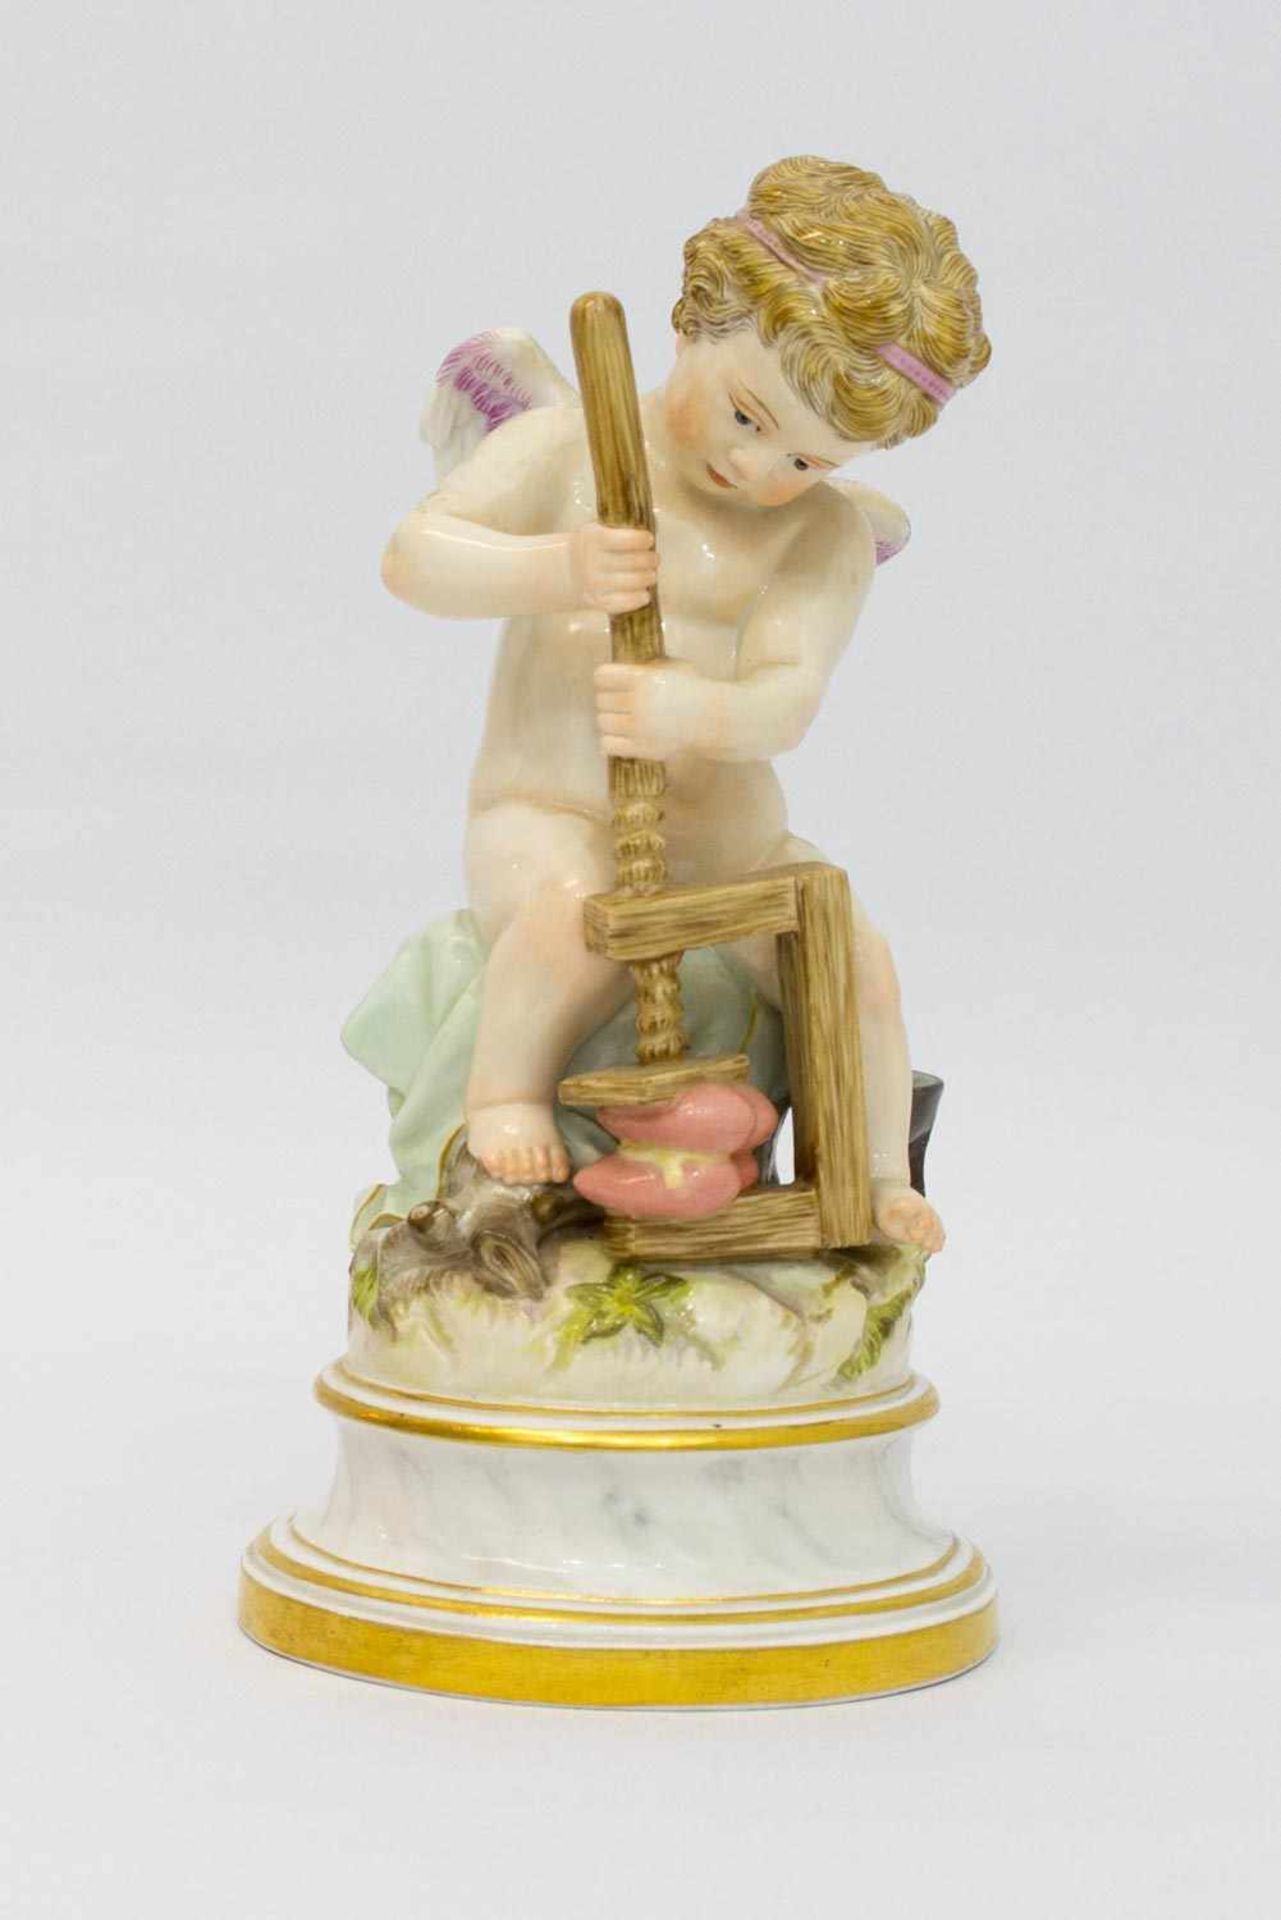 Amor mit gepressten Herzen Porzellanmanufaktur Meissen (Schwertermarke um 1900, I. Wahl), Entwurf